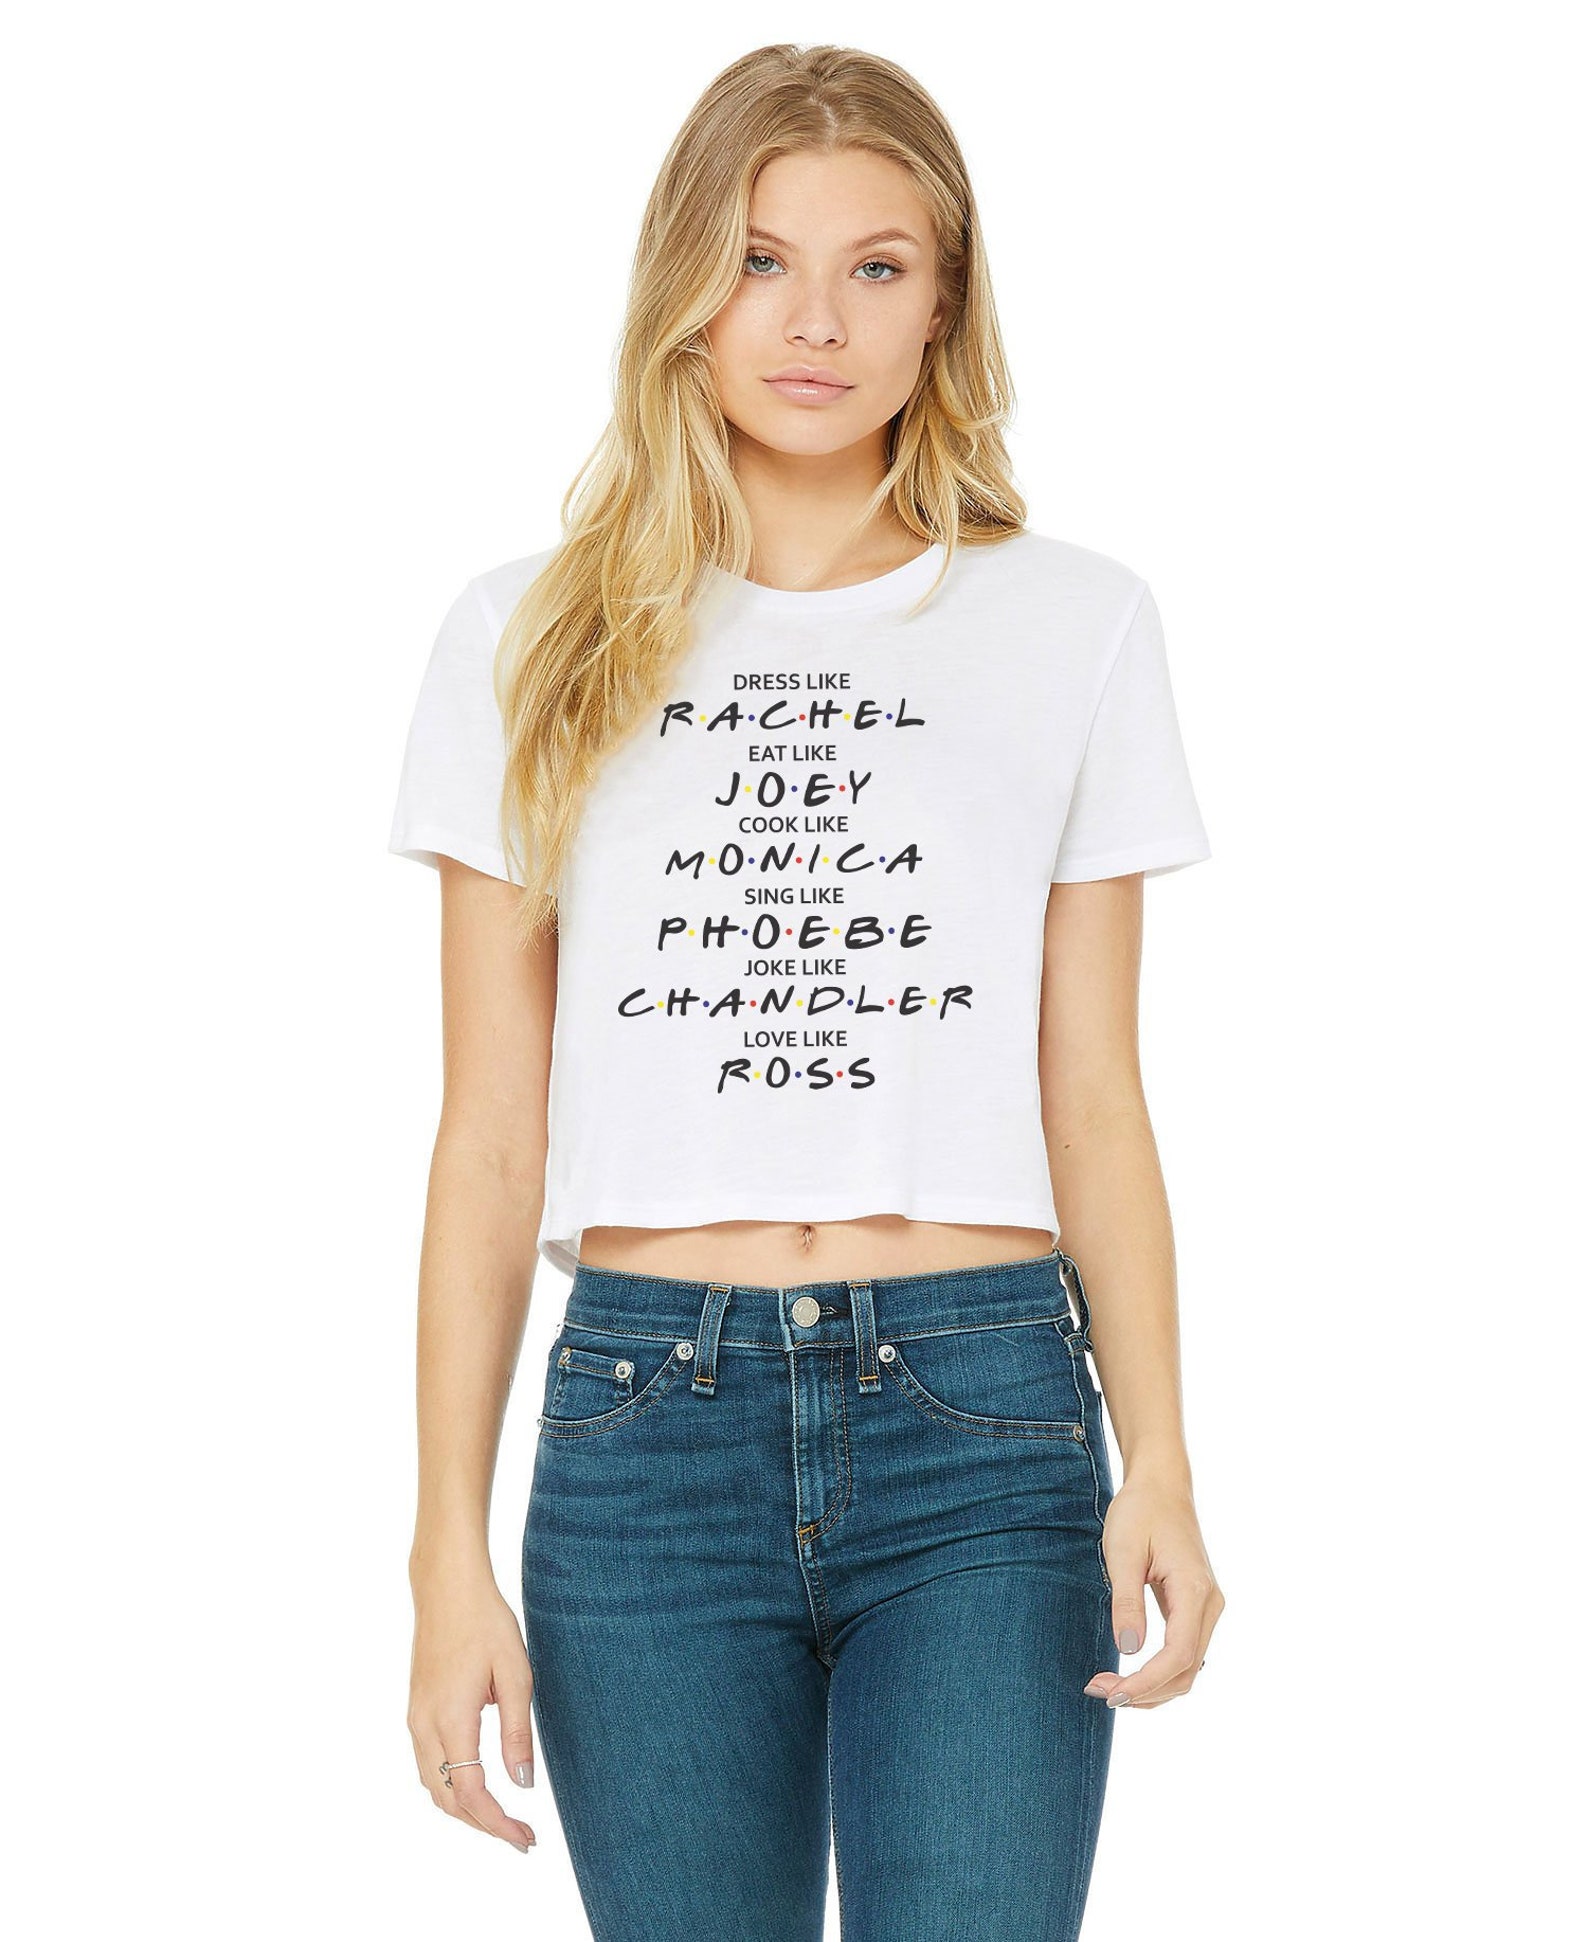 Dress Like Rachel Love Like Ross Friends Crop T-shirt For | Etsy